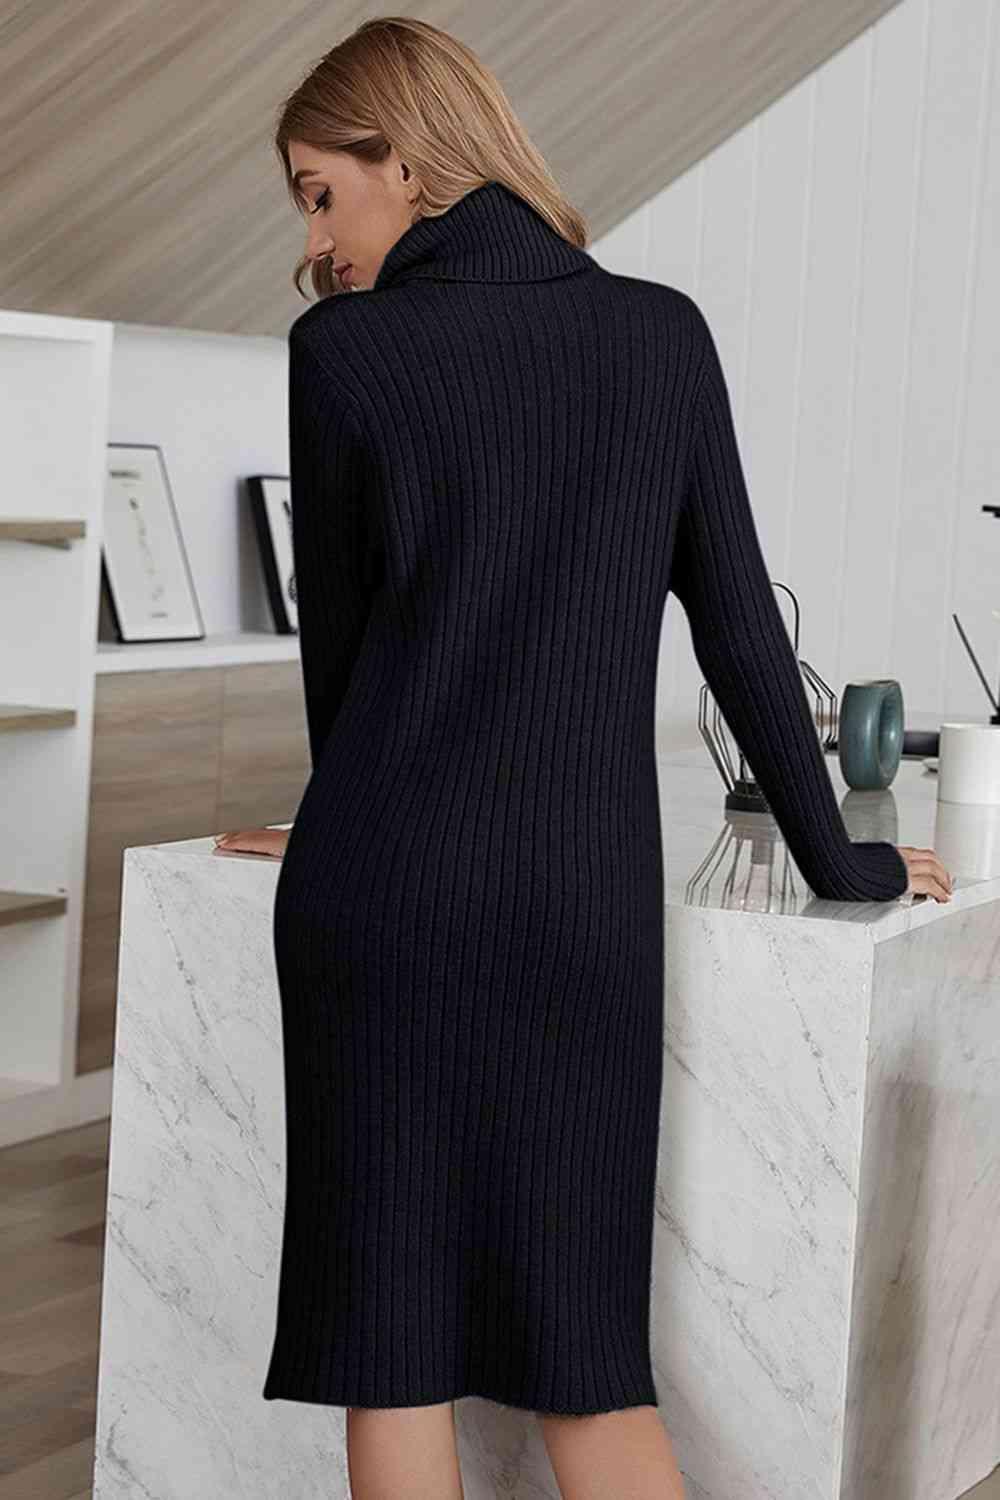 Infinitely Chic And Cozy Turtleneck Sweater Dress - MXSTUDIO.COM